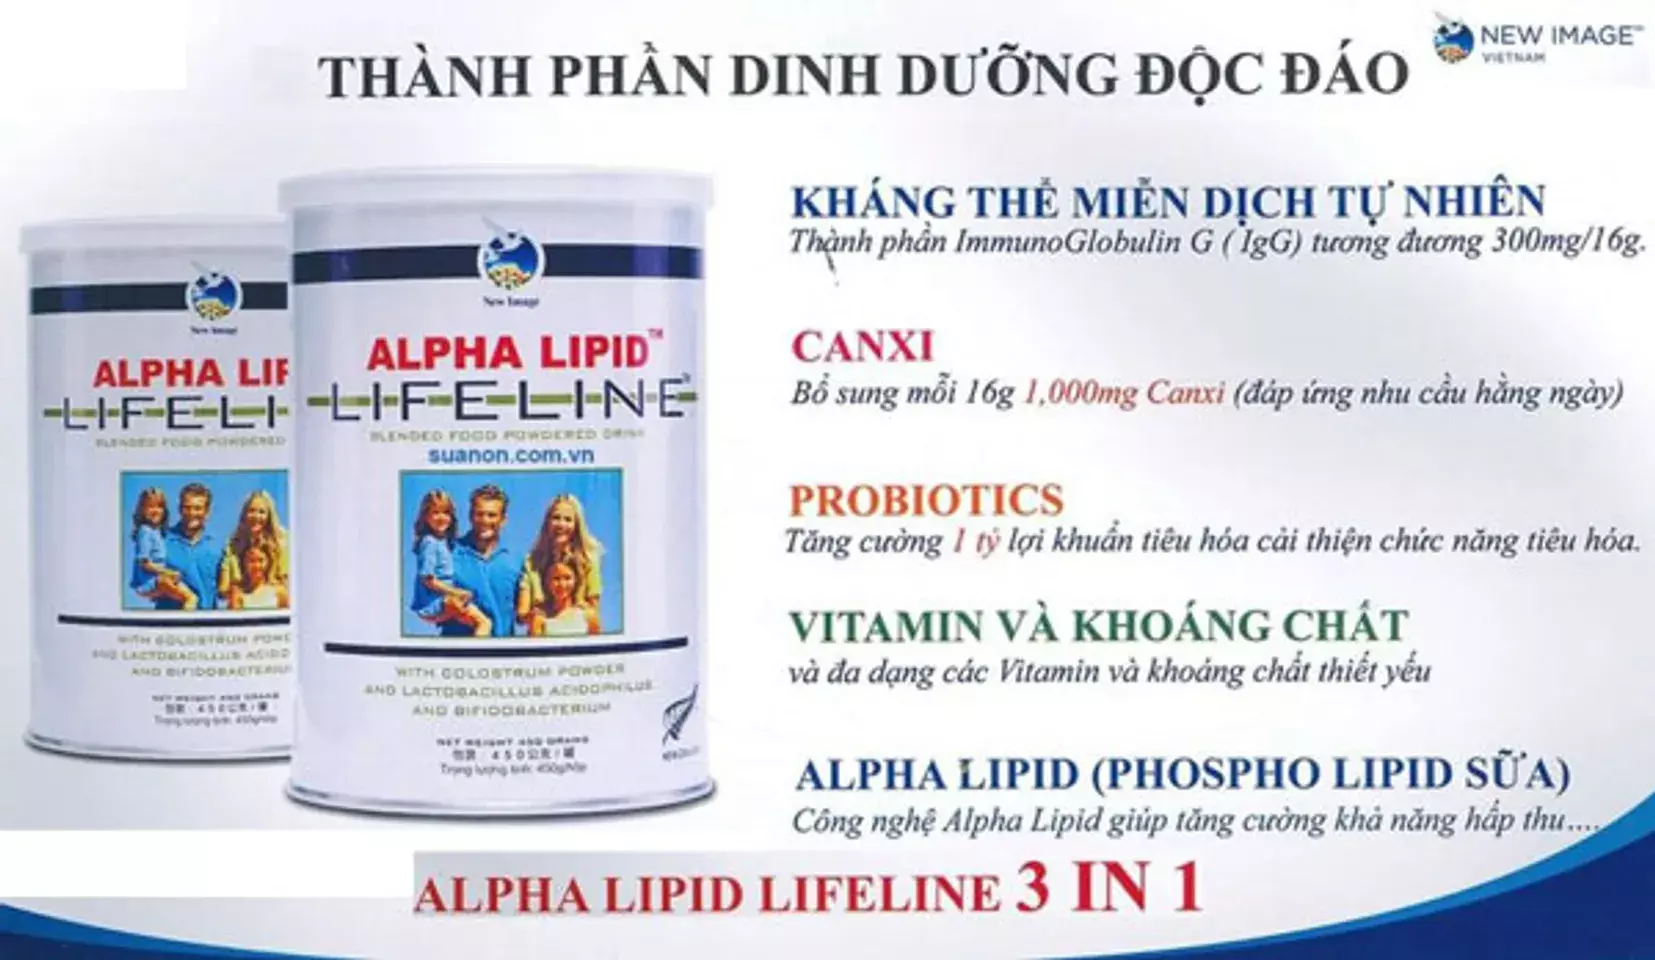 5 thành phần của sữa Alpha Lipid độc quyền là: Kháng thể, Canxi, lợi khuẩn tiêu hóa, vitamin, khoáng chất